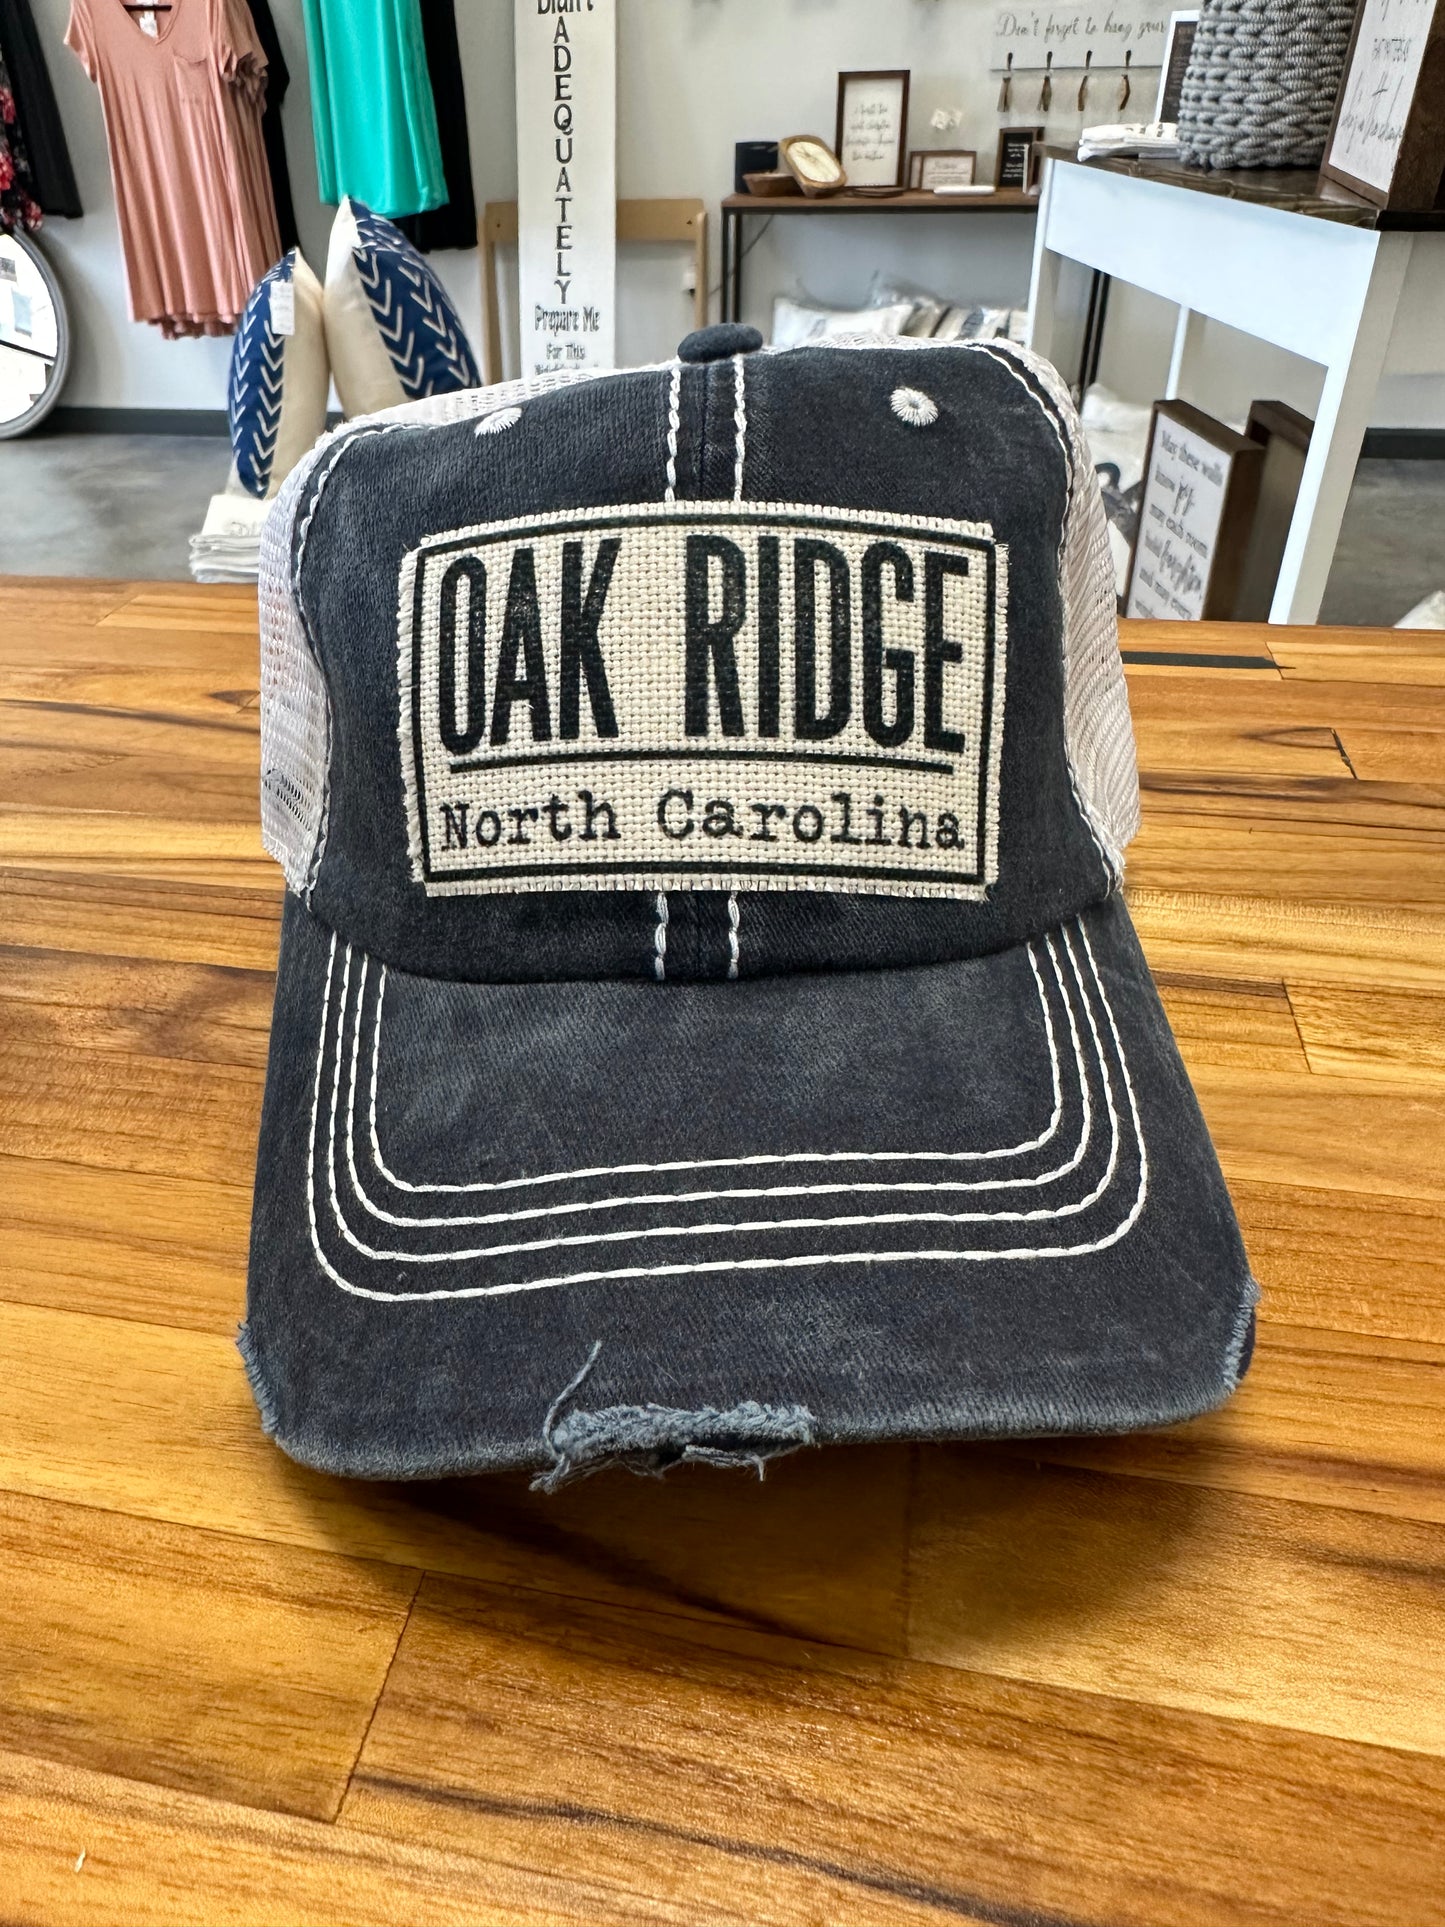 dkhandmade - Oak Ridge Blue and White Mesh Hat